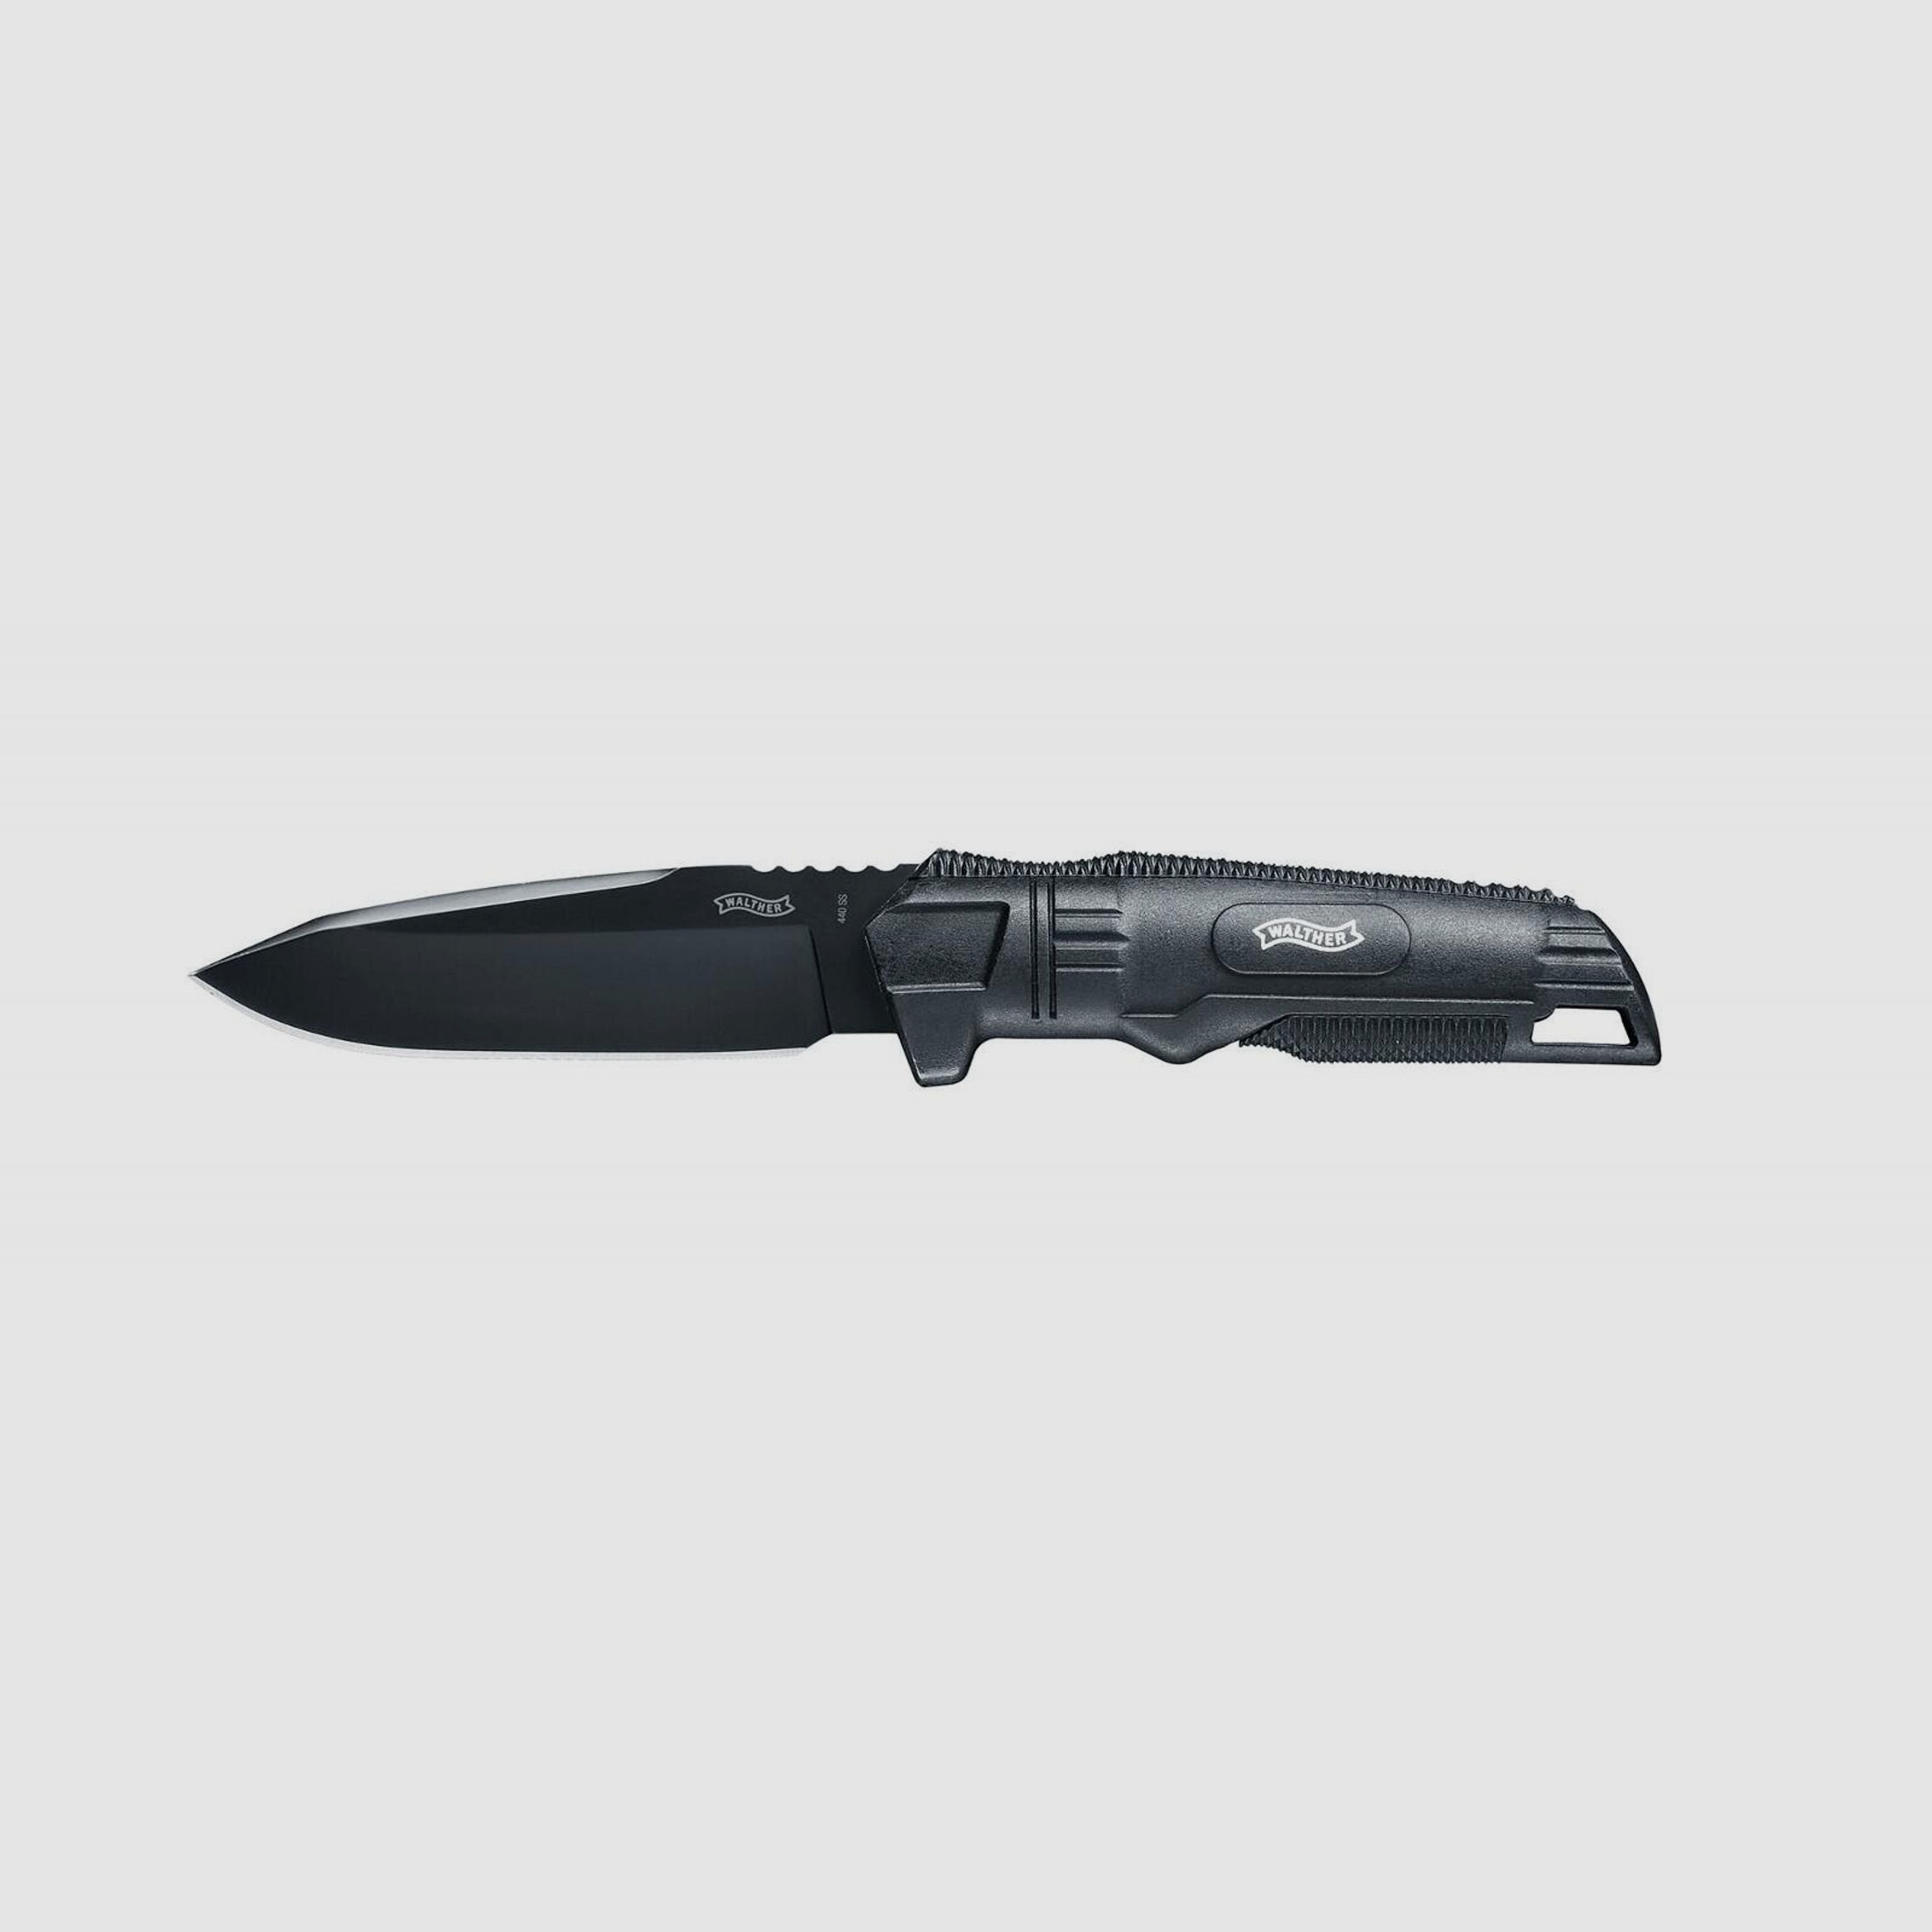 Walther Messer - BackUpKnife (BUK) - 440A-Stahl